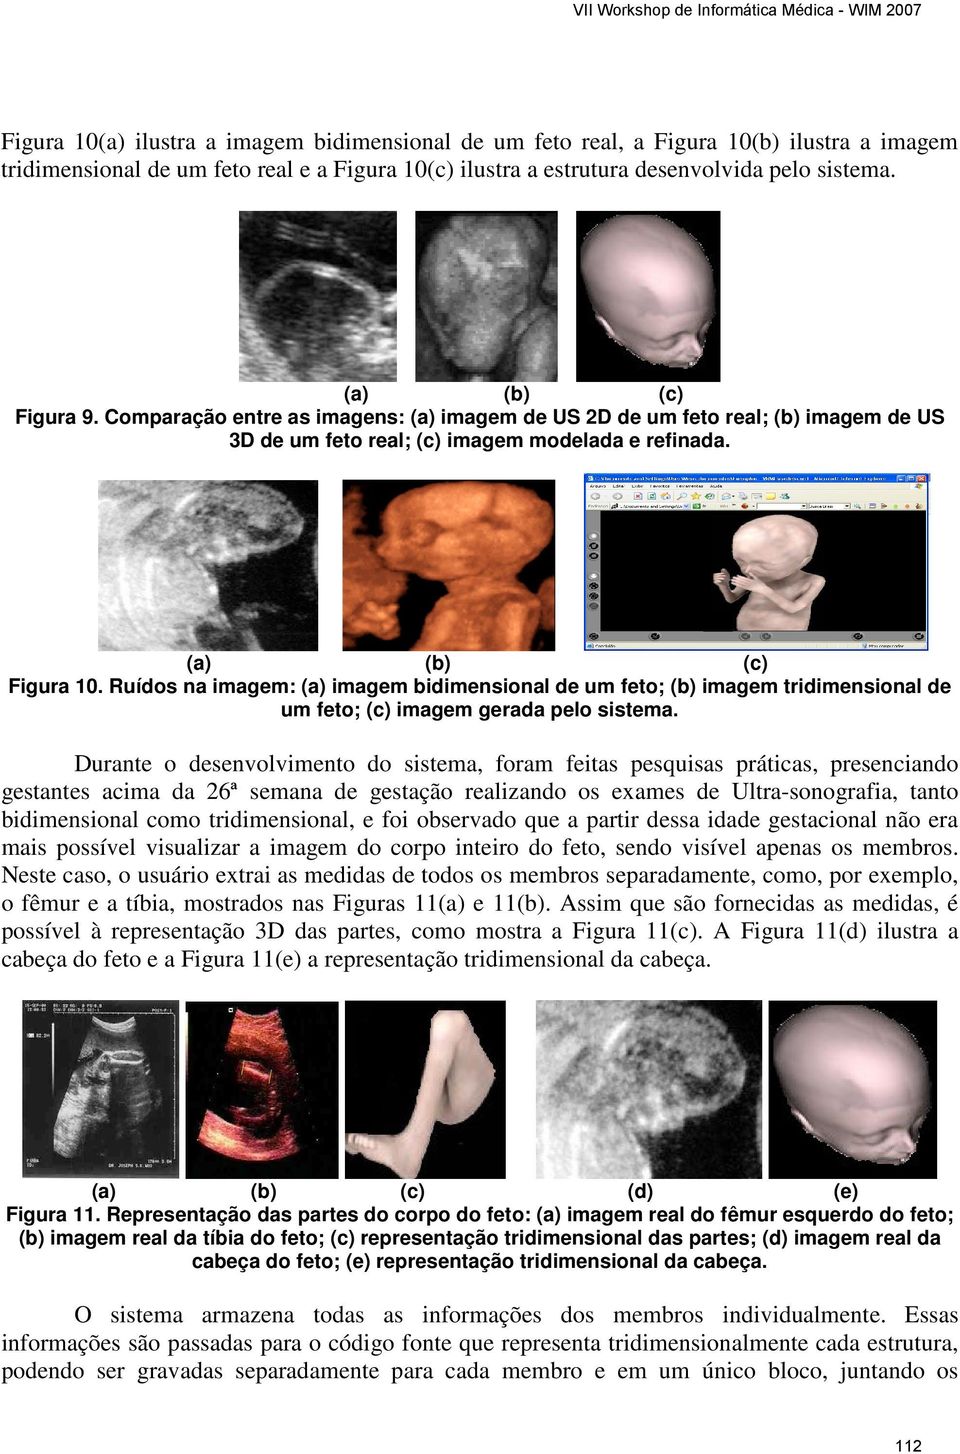 Ruídos na imagem: (a) imagem bidimensional de um feto; (b) imagem tridimensional de um feto; (c) imagem gerada pelo sistema.